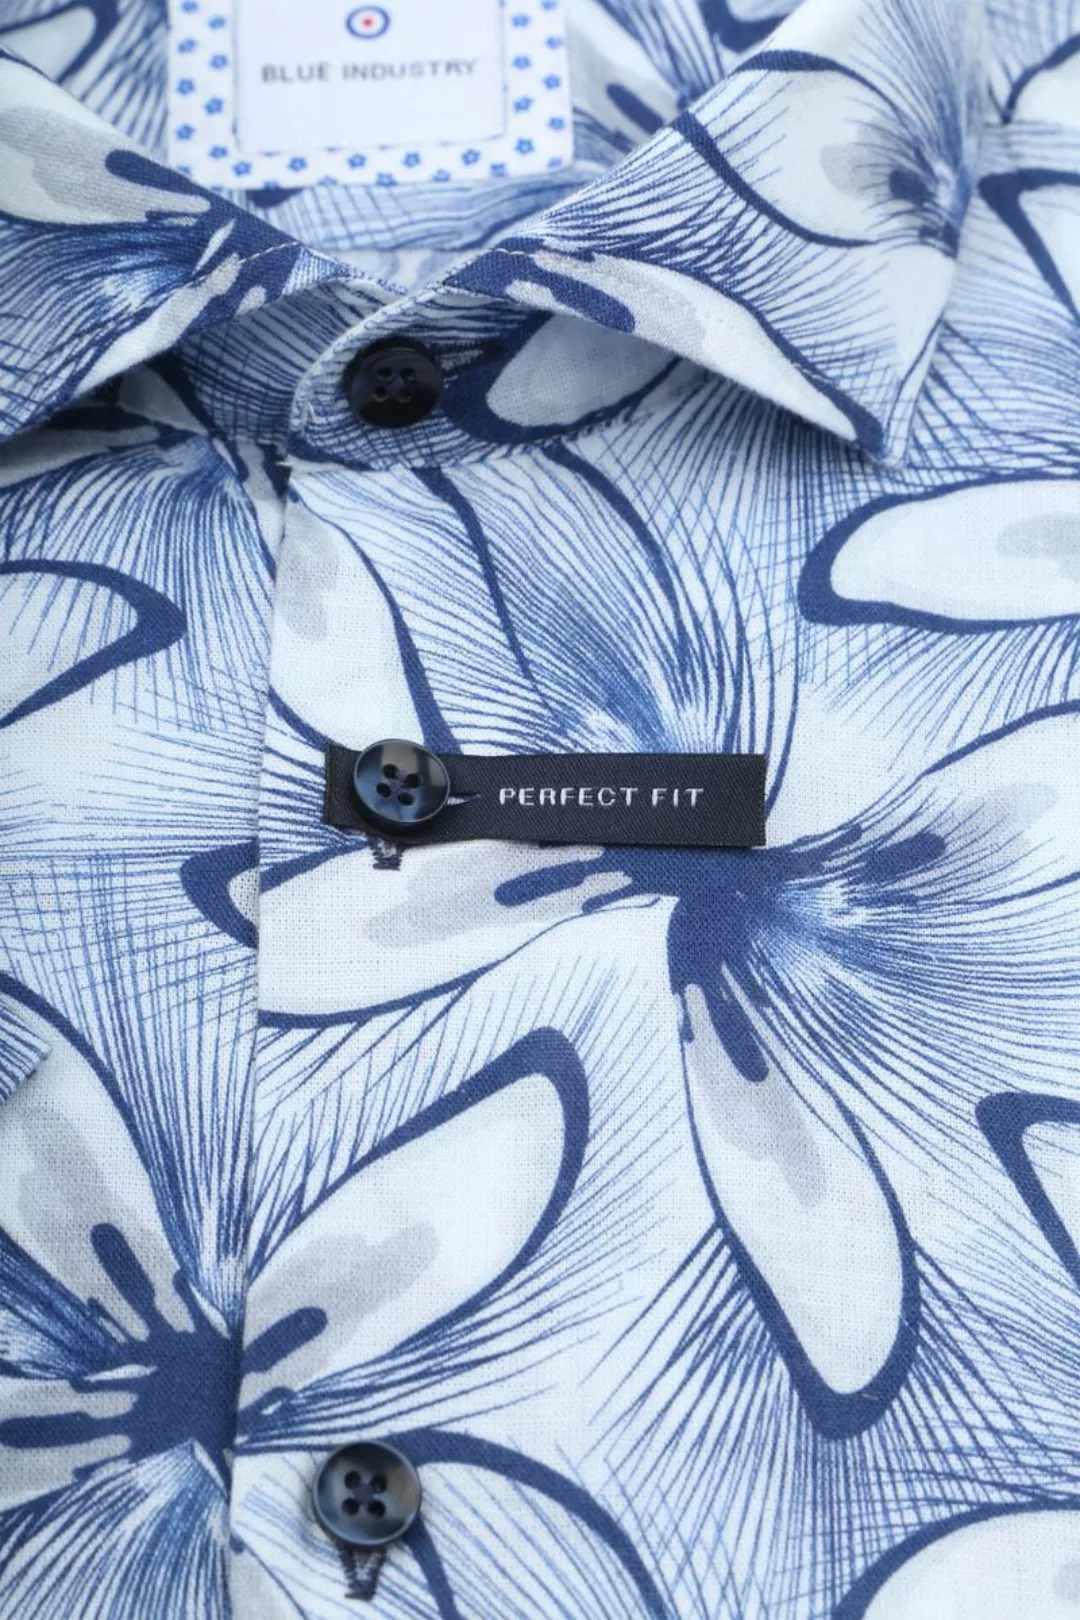 Blue Industry Short Sleeve Hemd Leinen Druck Blau - Größe 41 günstig online kaufen